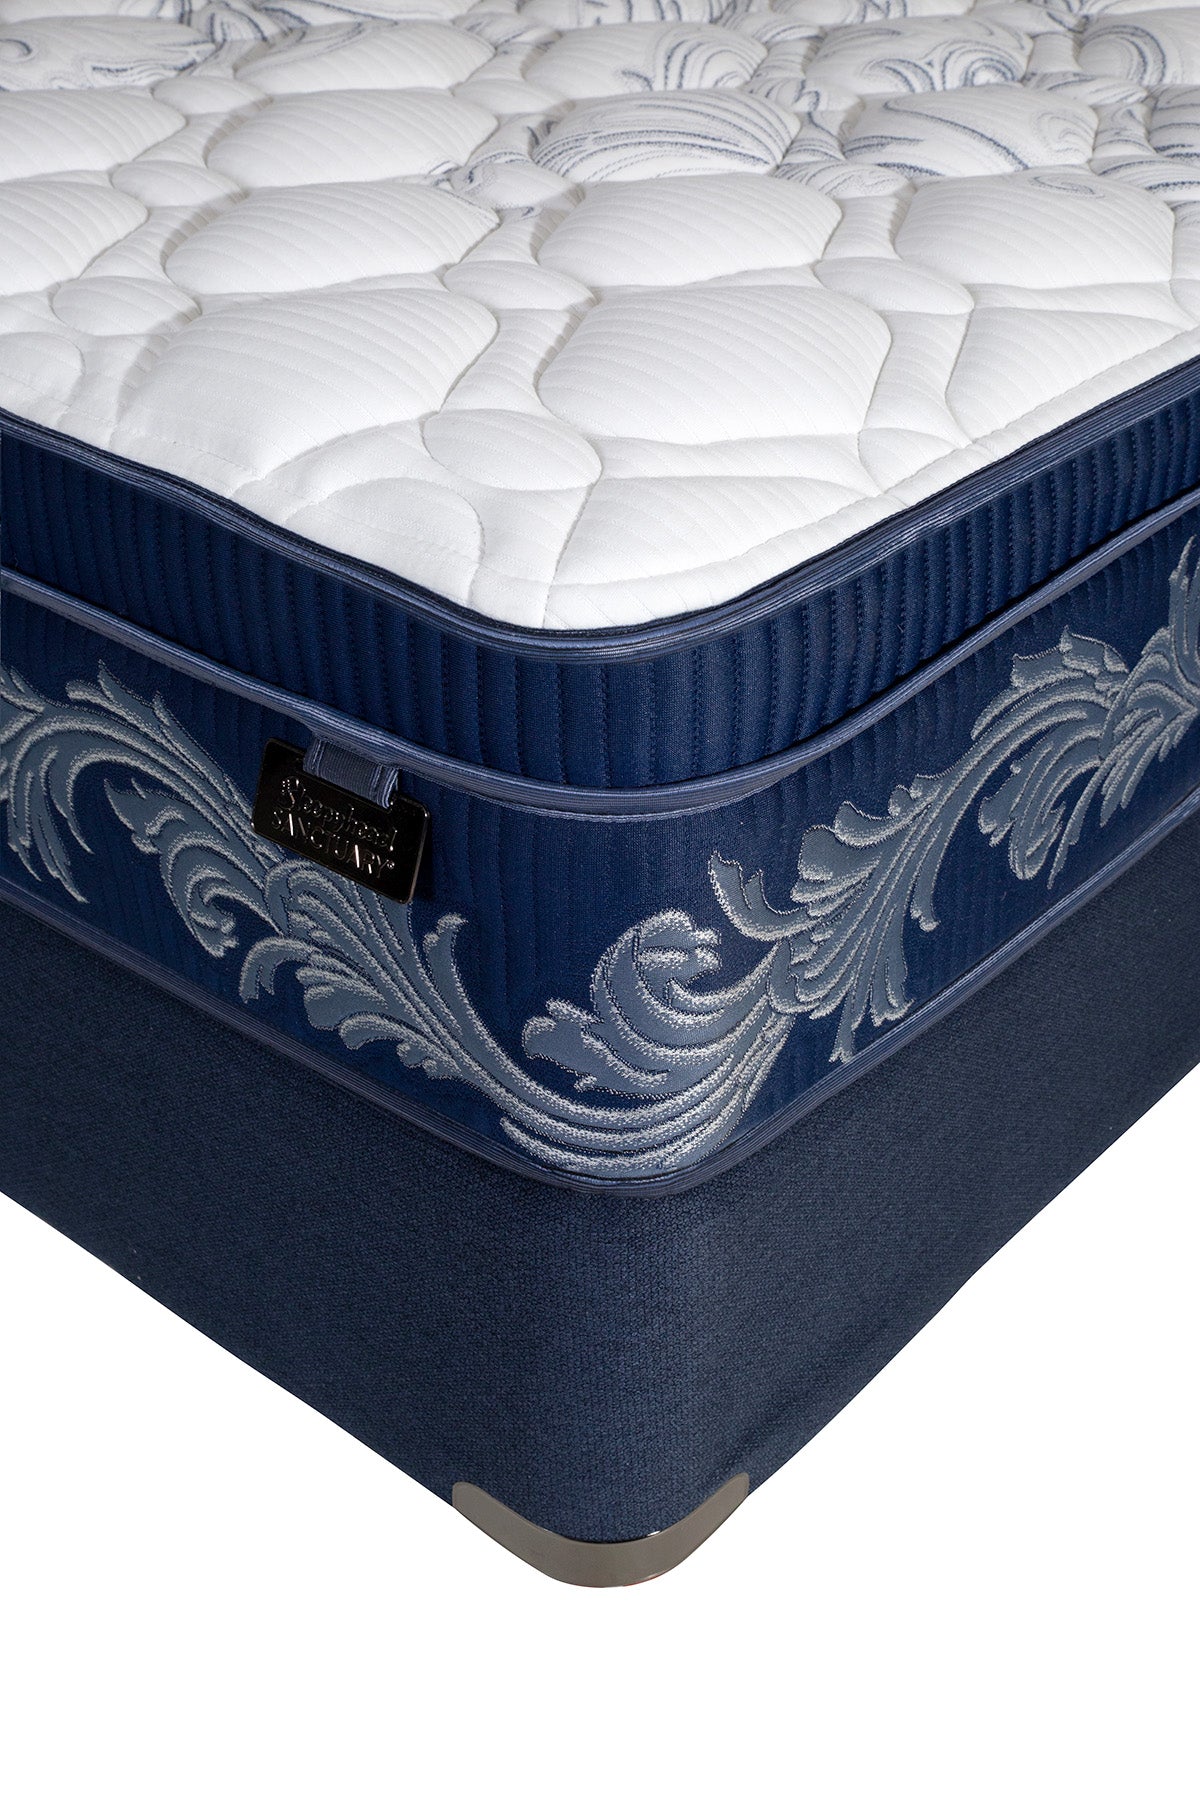 midnight5-long-double-mattress-2